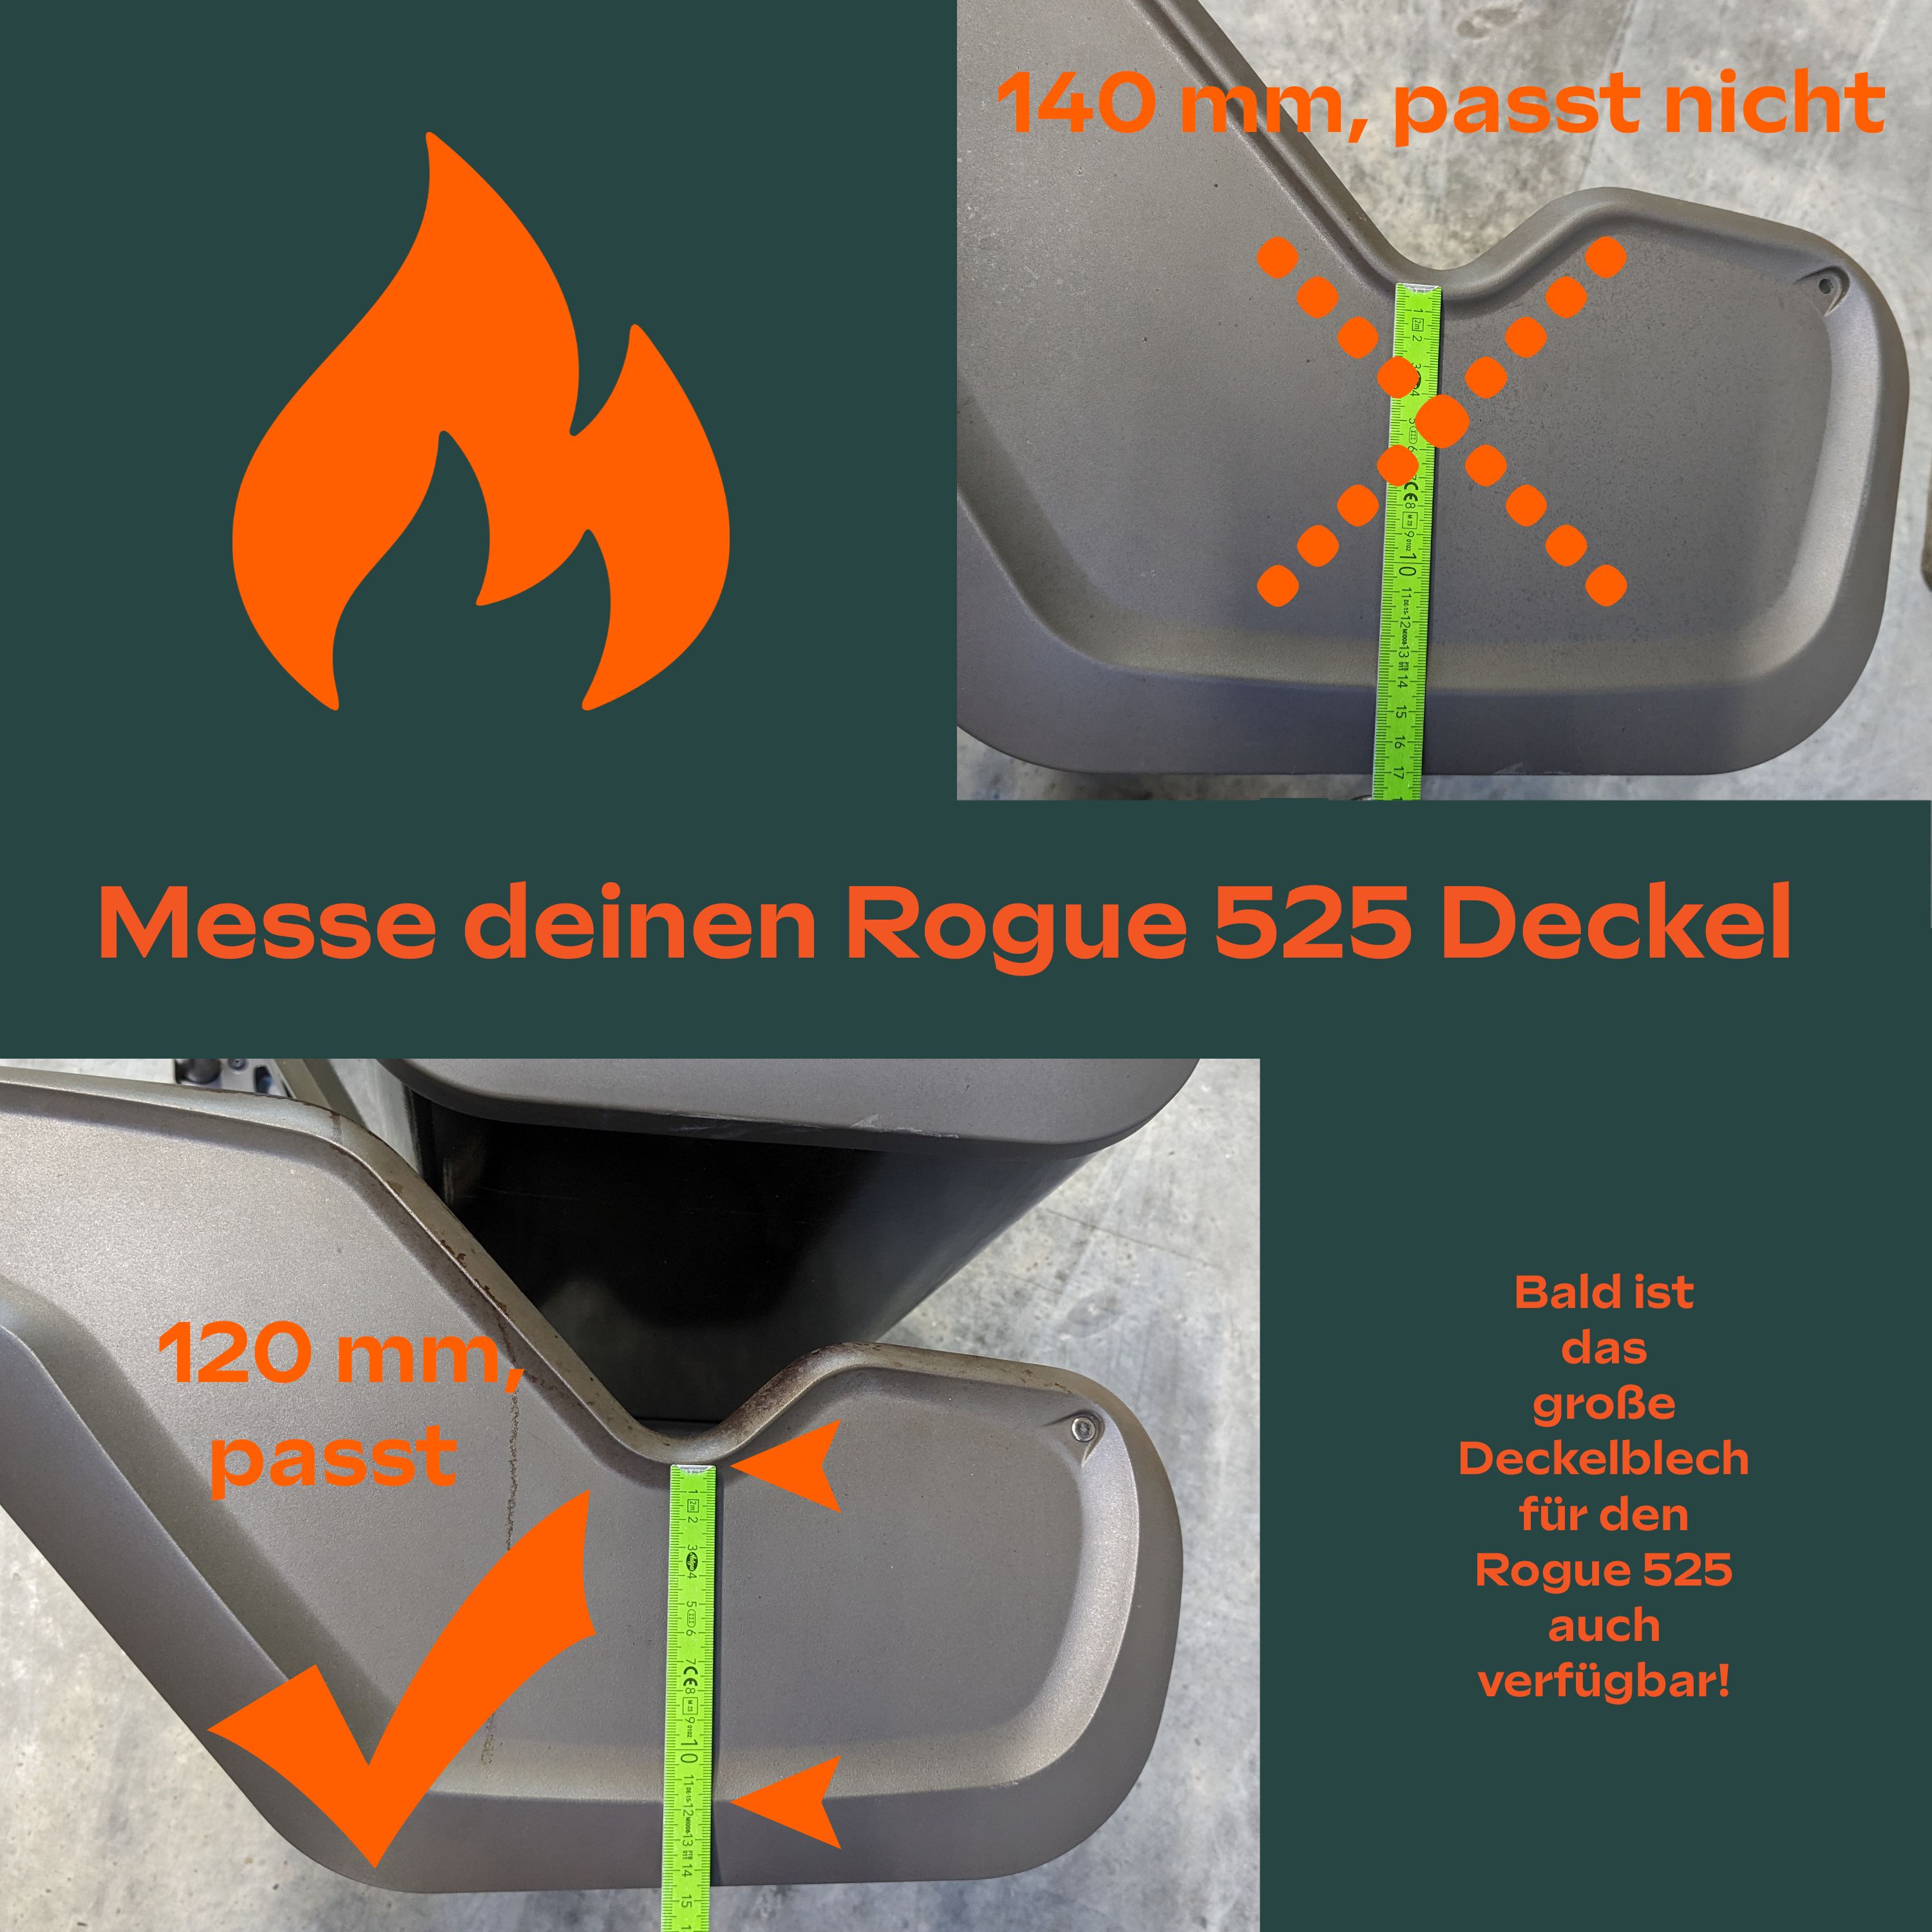 Edelstahl Hitzeschild - Doppelte Wandung für mehr Hitze im Grill passend für Napoleon Rogue 525